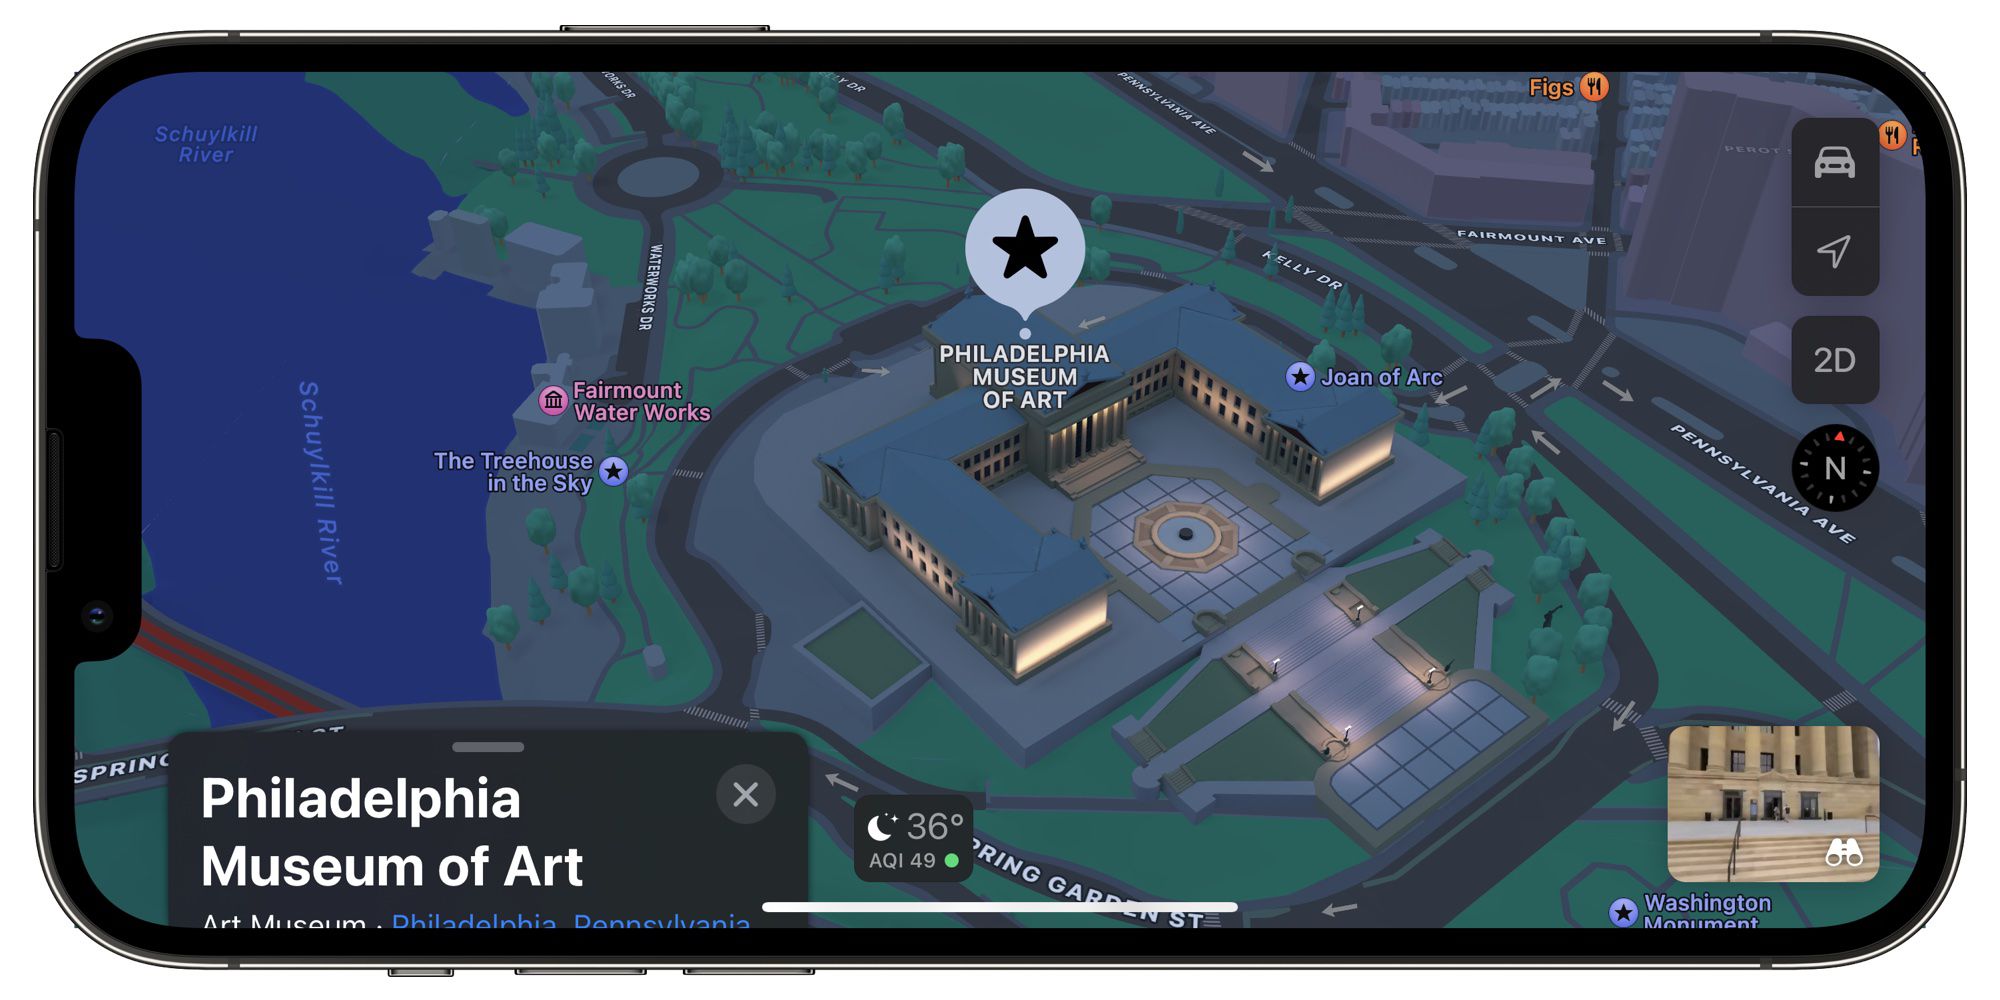 La vista 3D in Mappe di Apple anche per Filadelfia